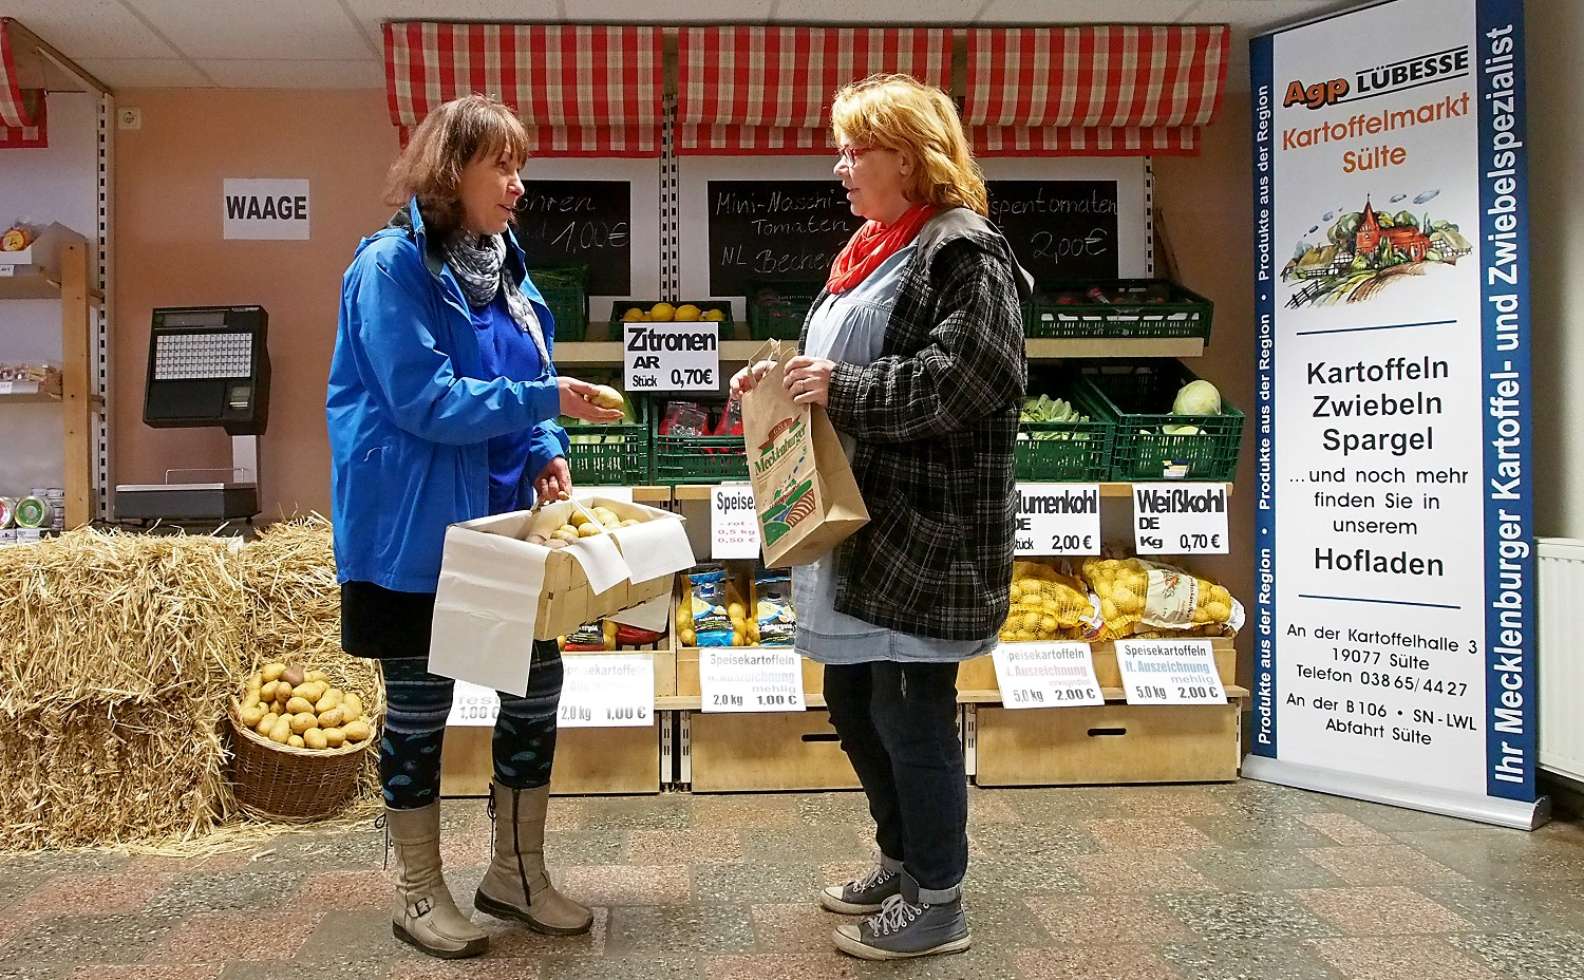 Hofladen des Kartoffelmarktes Sülte